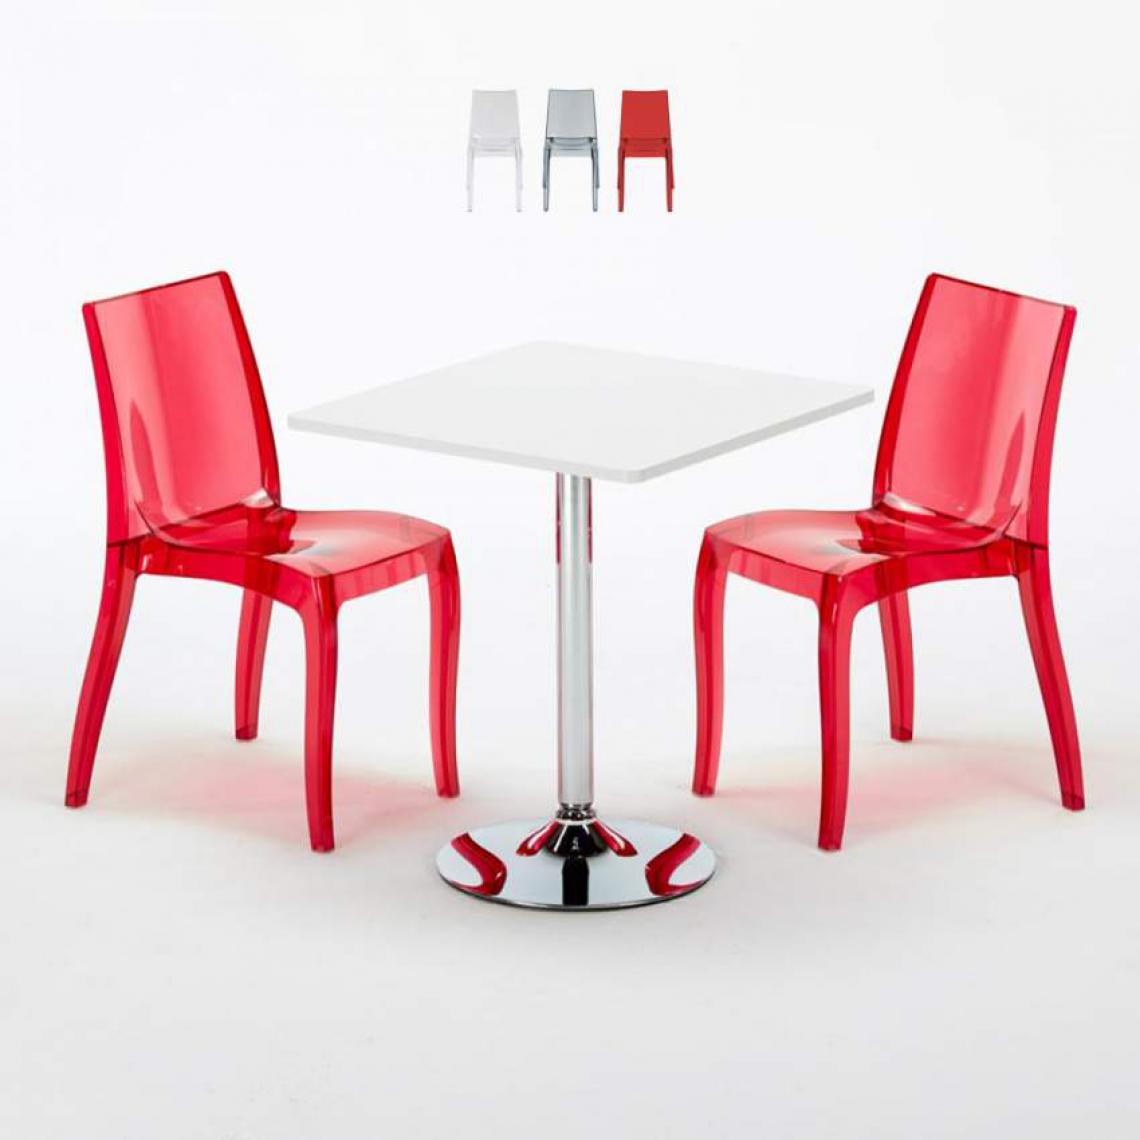 Grand Soleil - Table Carrée Blanche 70x70cm Avec 2 Chaises Colorées Et Transparentes Set Intérieur Bar Café Cristal Light Titanium, Couleur: Rouge transparent - Tables à manger